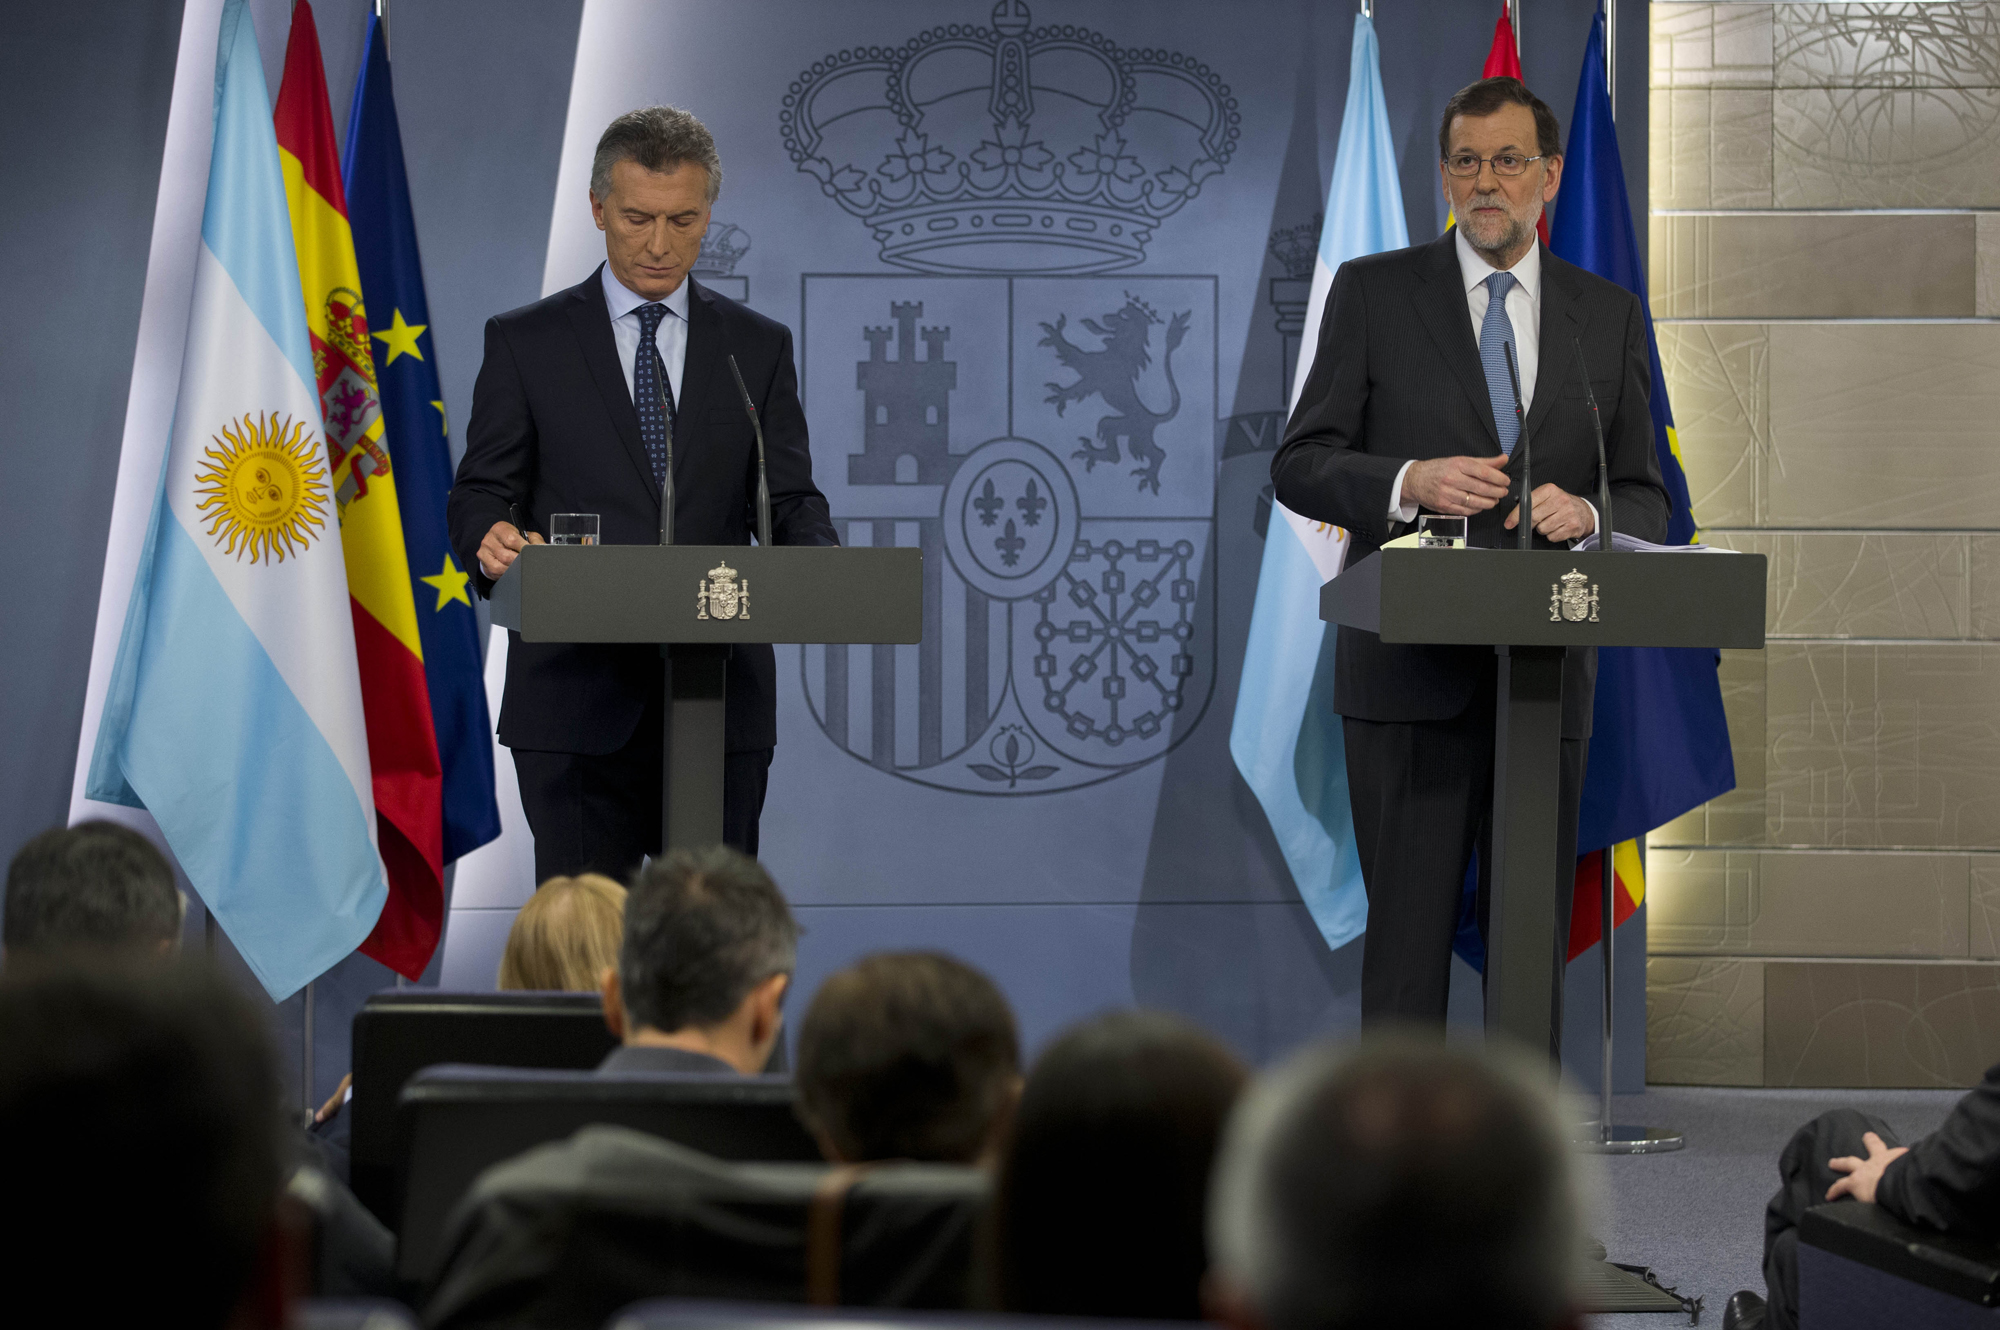 رئيس الارجنتين الزائر ماوريسيو ماكرى مع رئيس الوزراء الاسباني ماريانو راخوي في مؤتمر صحافي مشترك